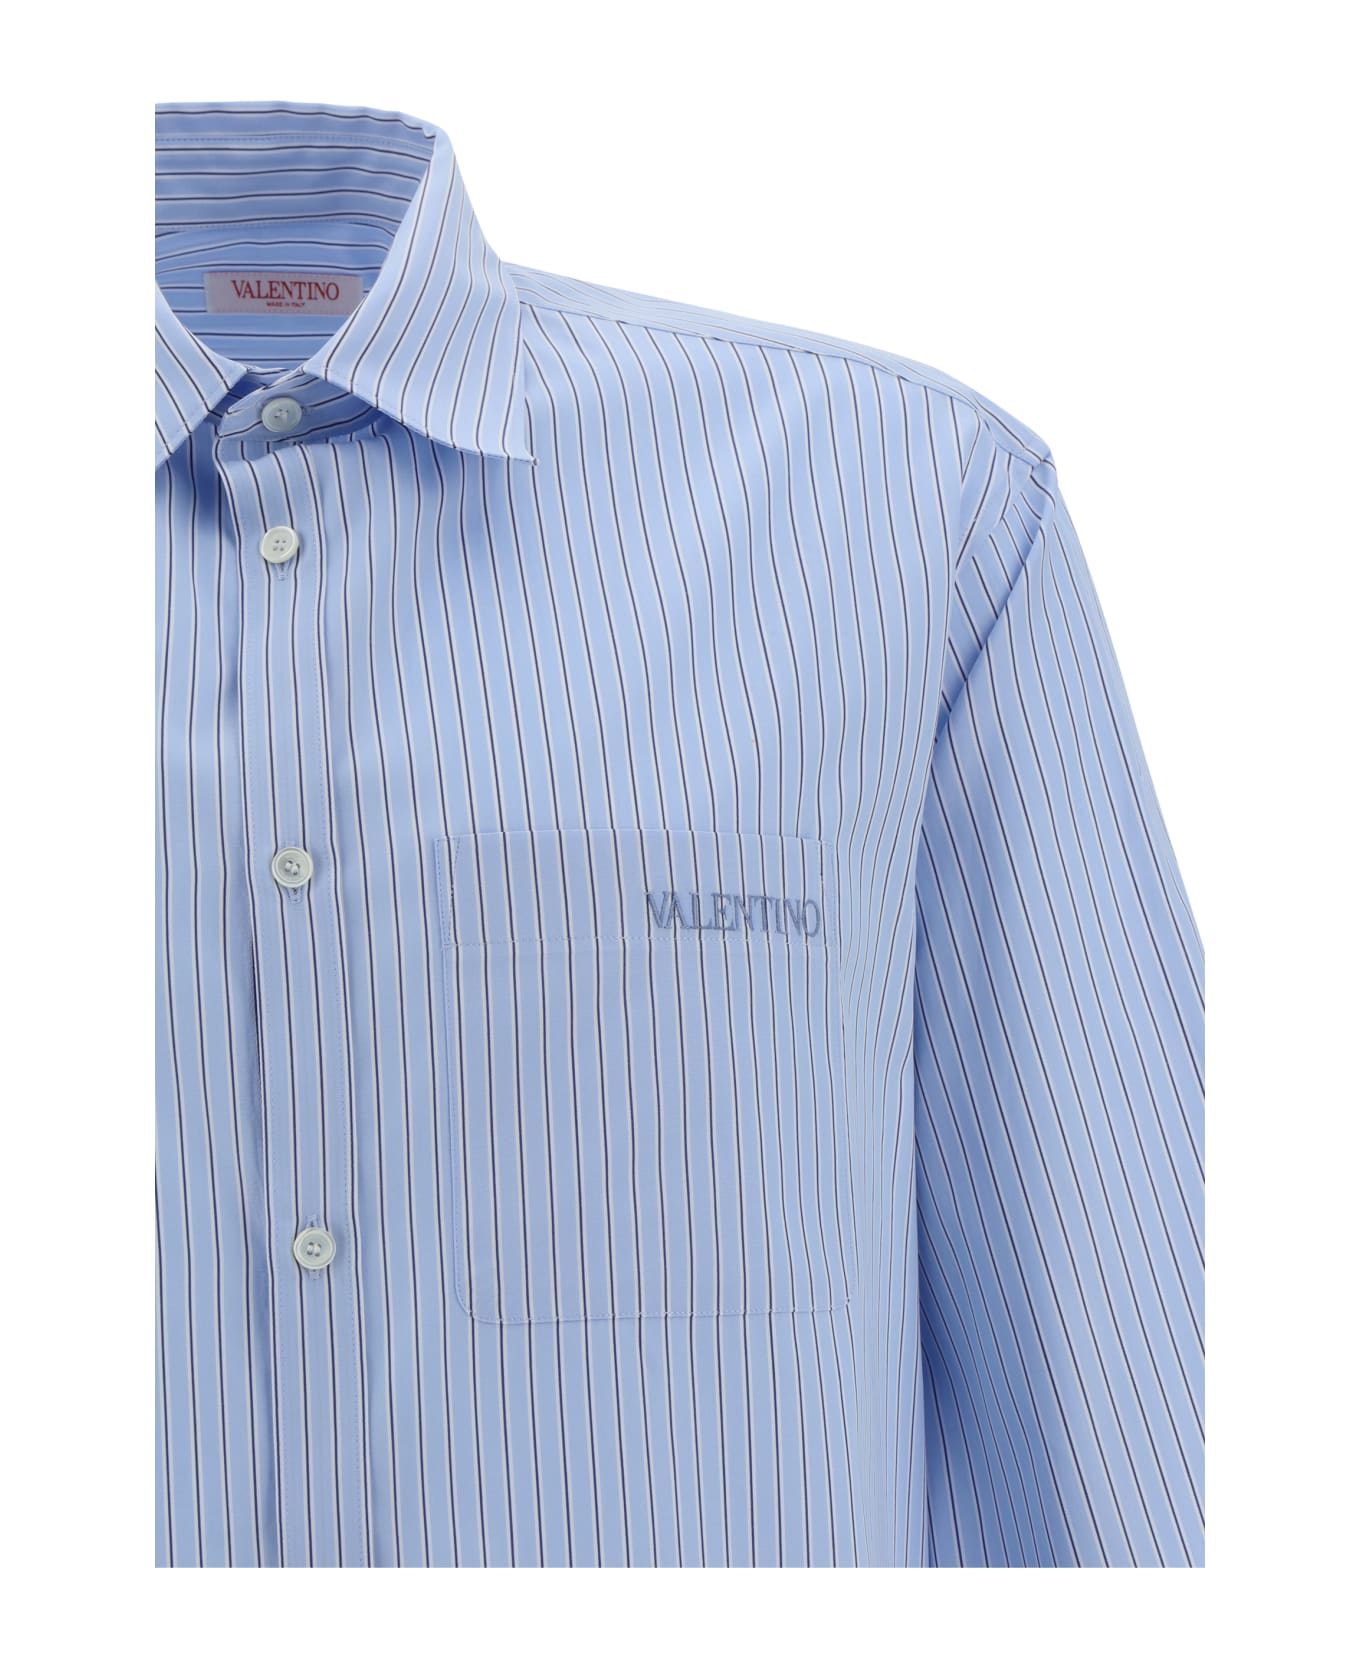 Valentino Garavani Long Sleeved Stripe Shirt - Riga Azzurro E Bianco シャツ